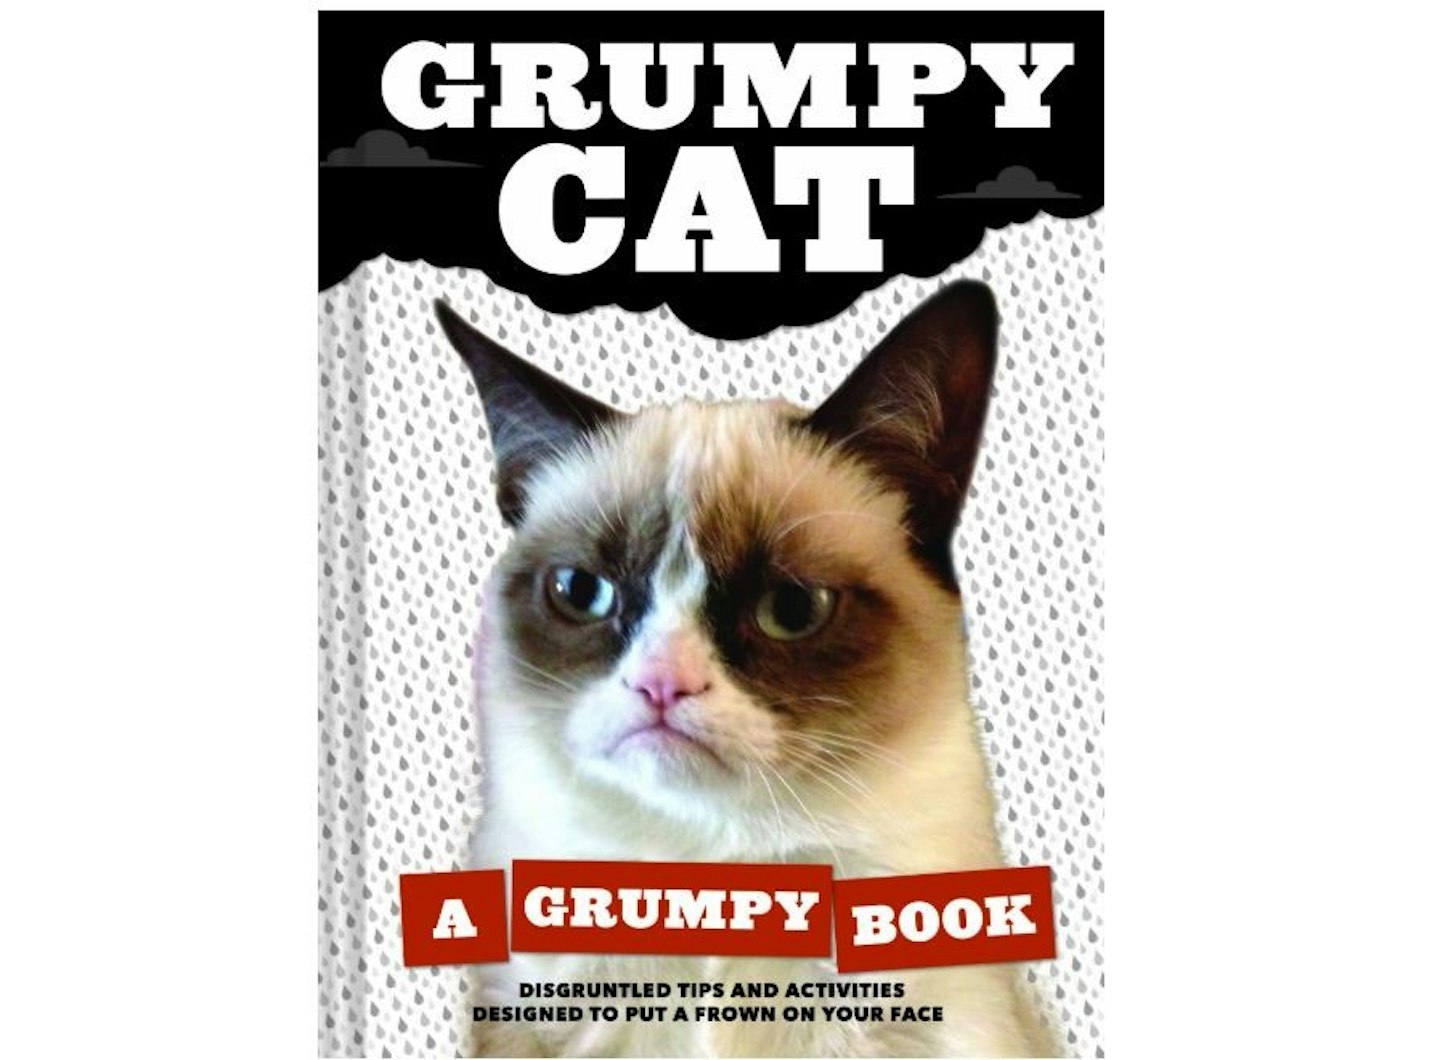 Grumpy Cat: A Grumpy Book for Grumpy Days, £8.46